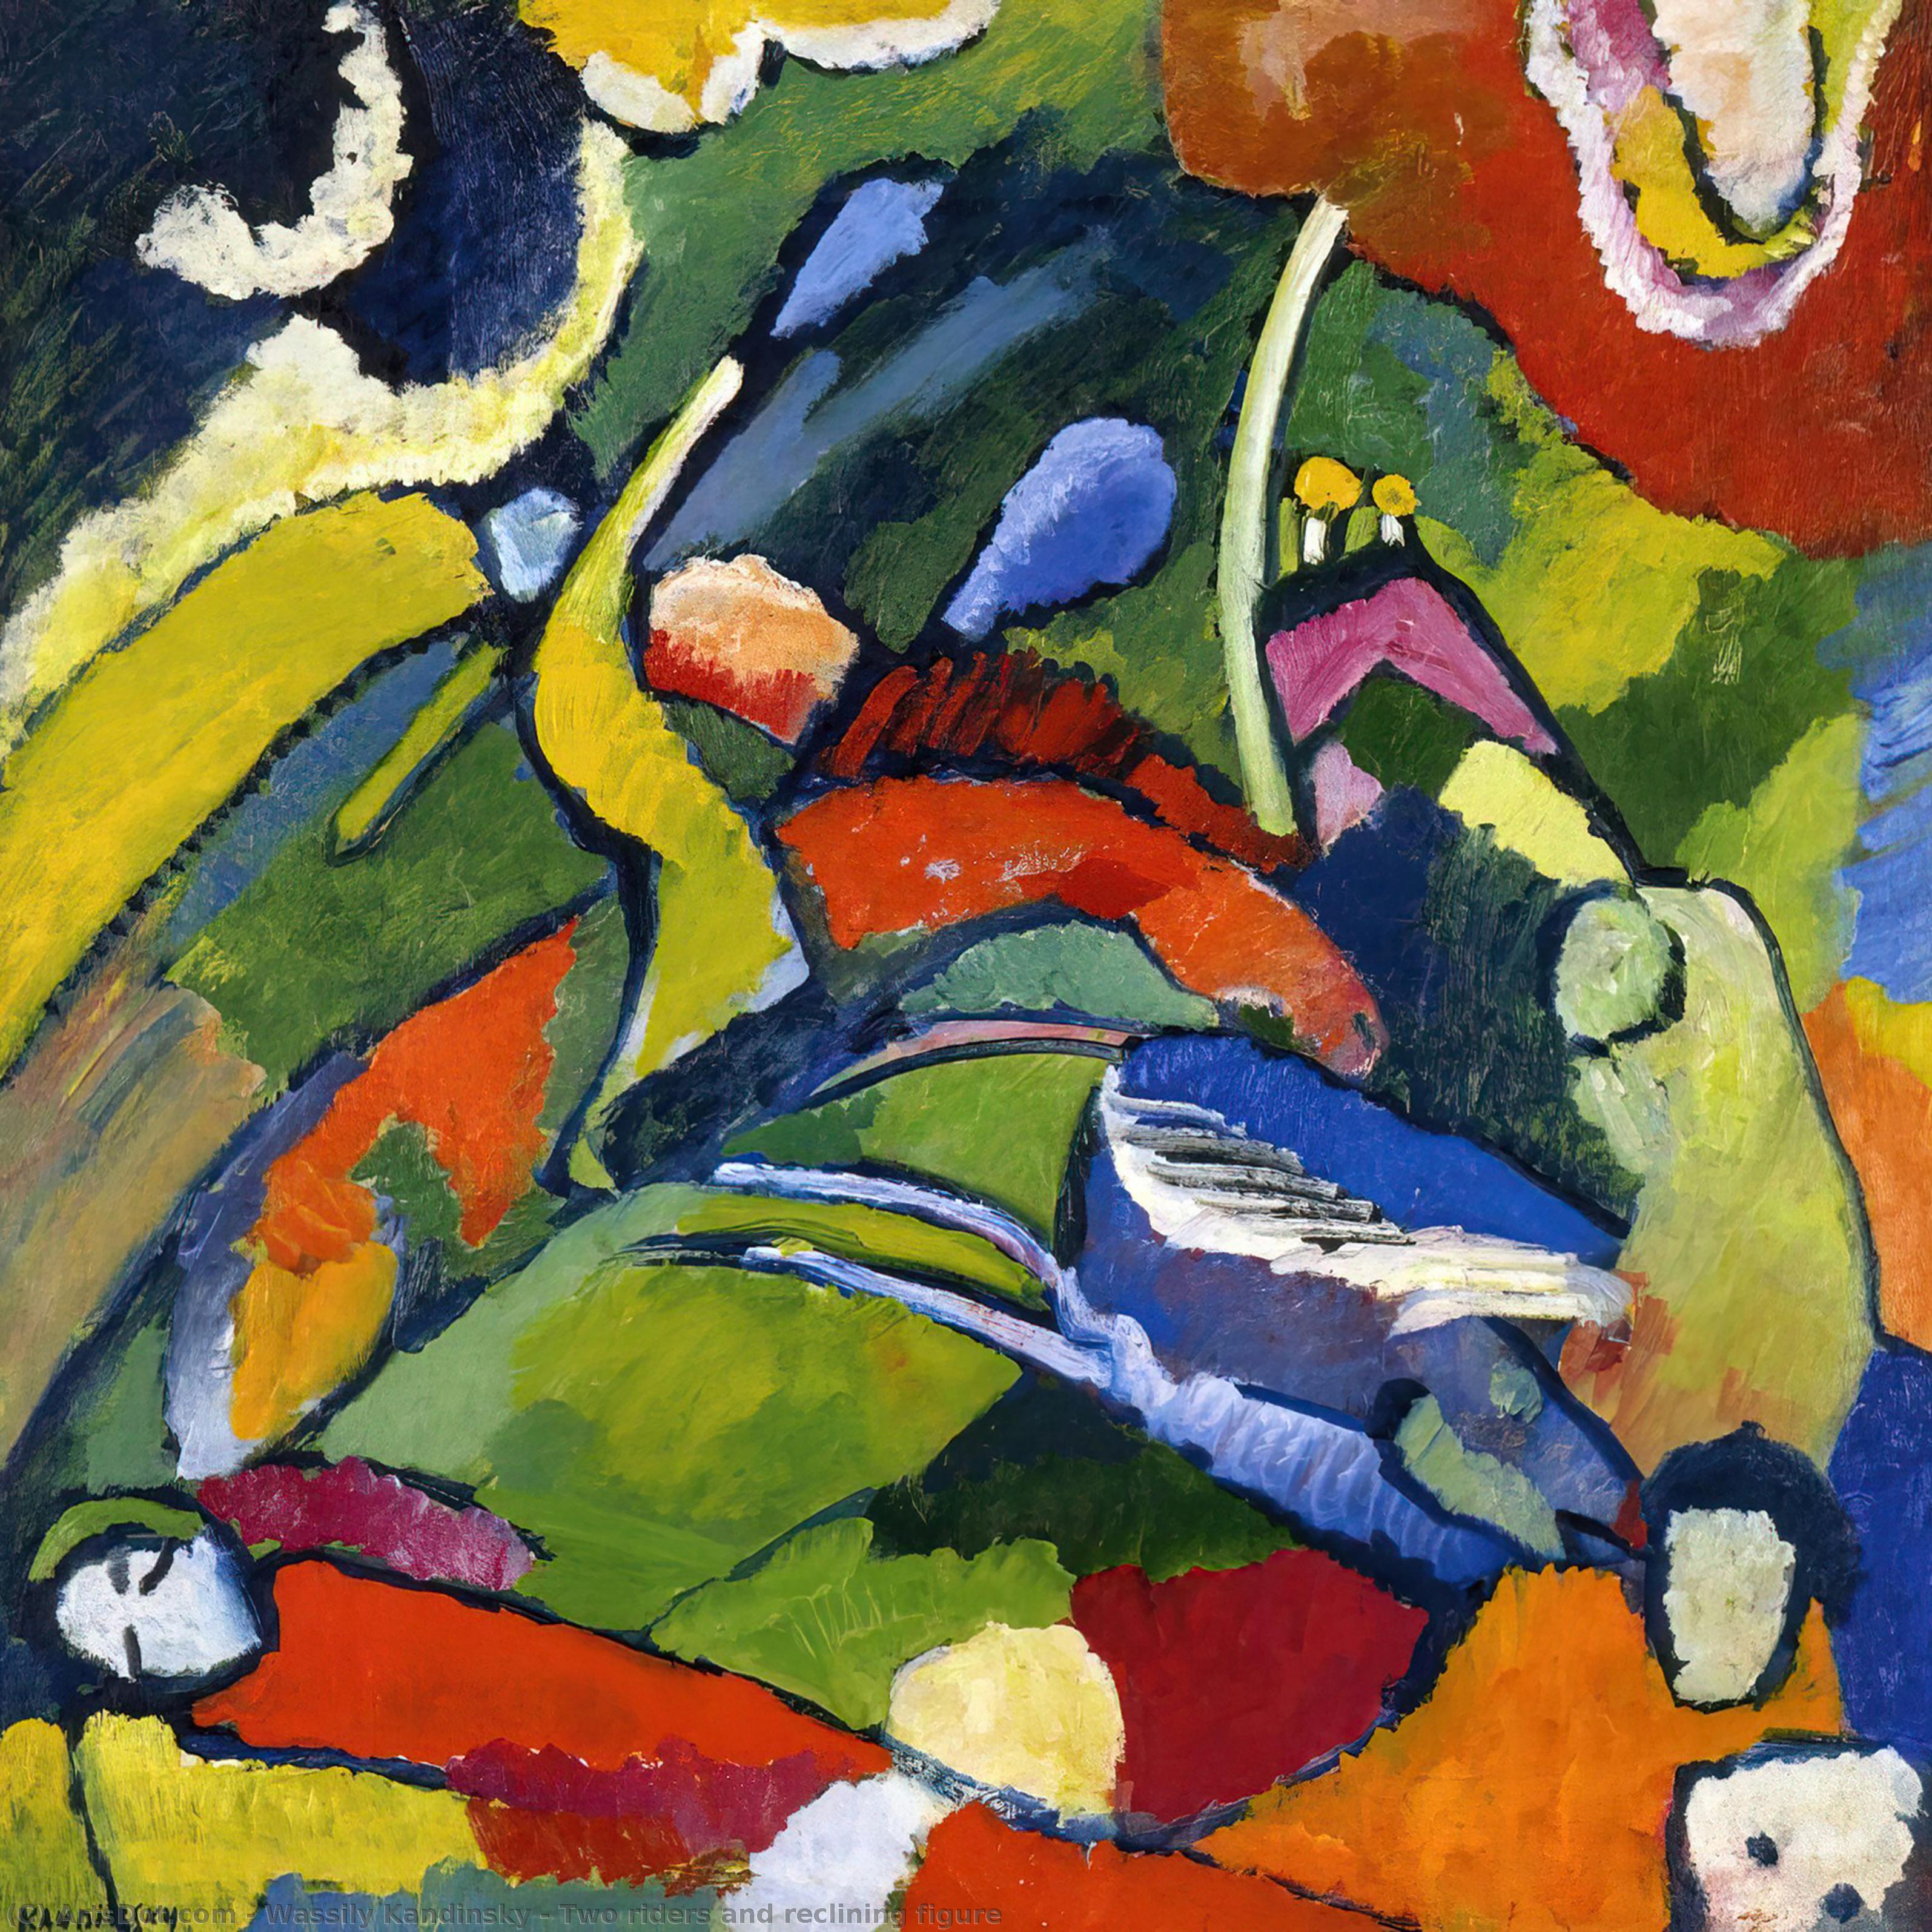 WikiOO.org - Enciklopedija likovnih umjetnosti - Slikarstvo, umjetnička djela Wassily Kandinsky - Two riders and reclining figure